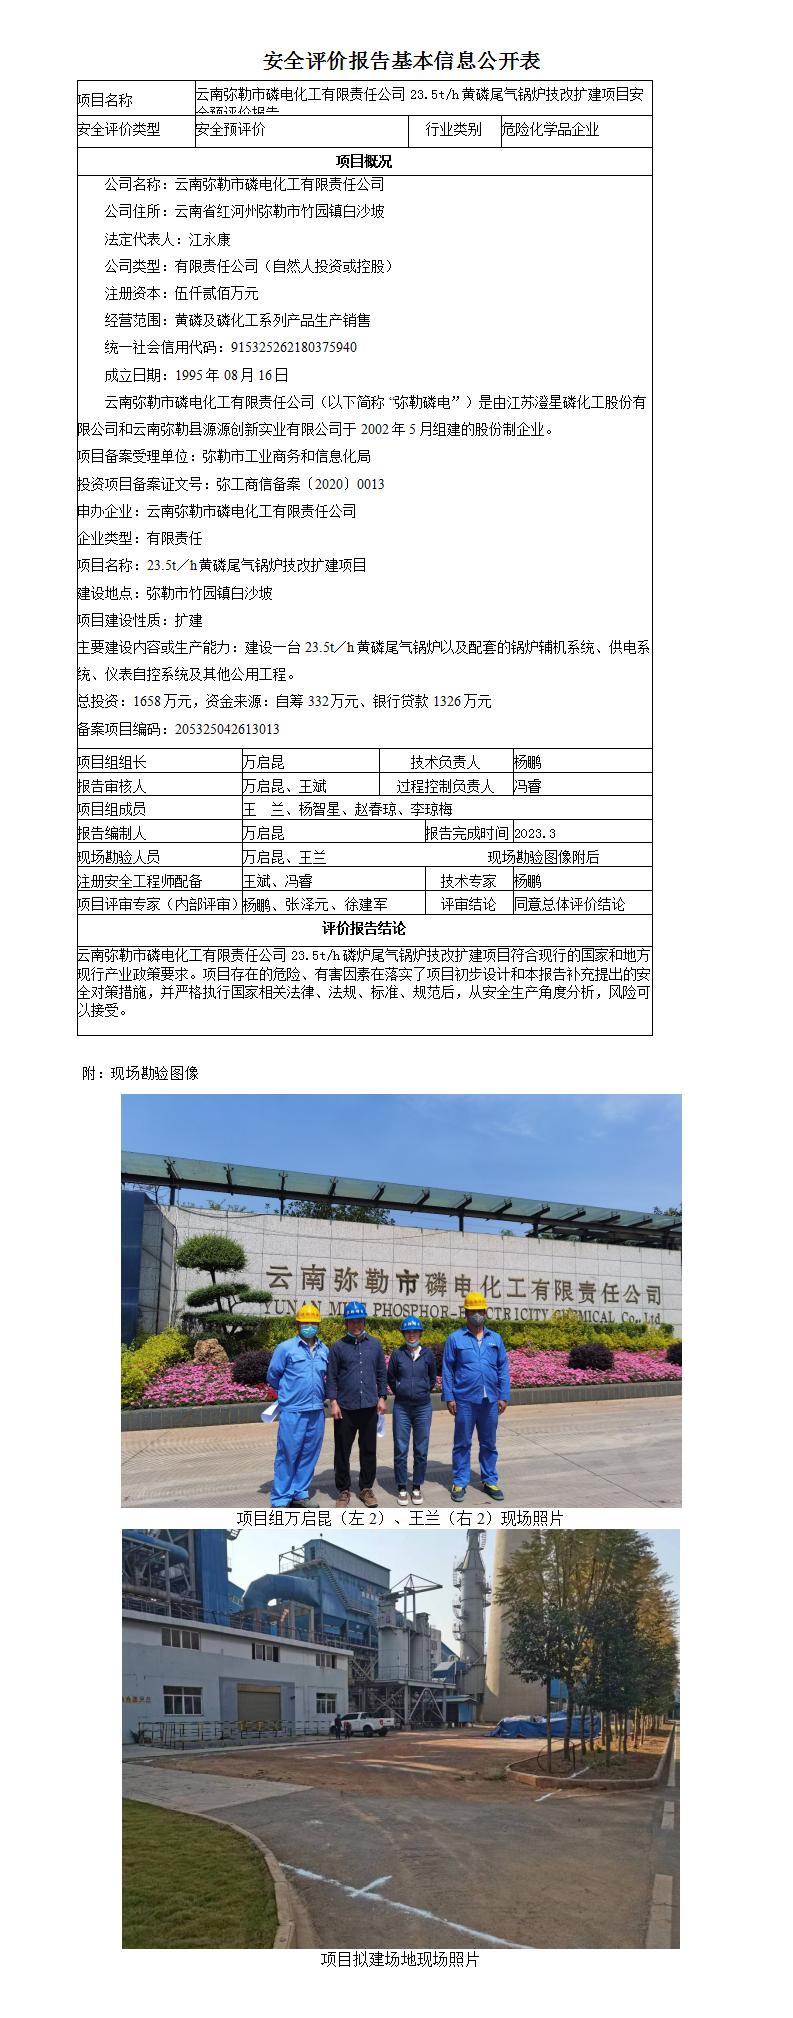 云南弥勒市磷电化工有限责任公司燃气锅炉项目安全预评价报告基本信息公开表